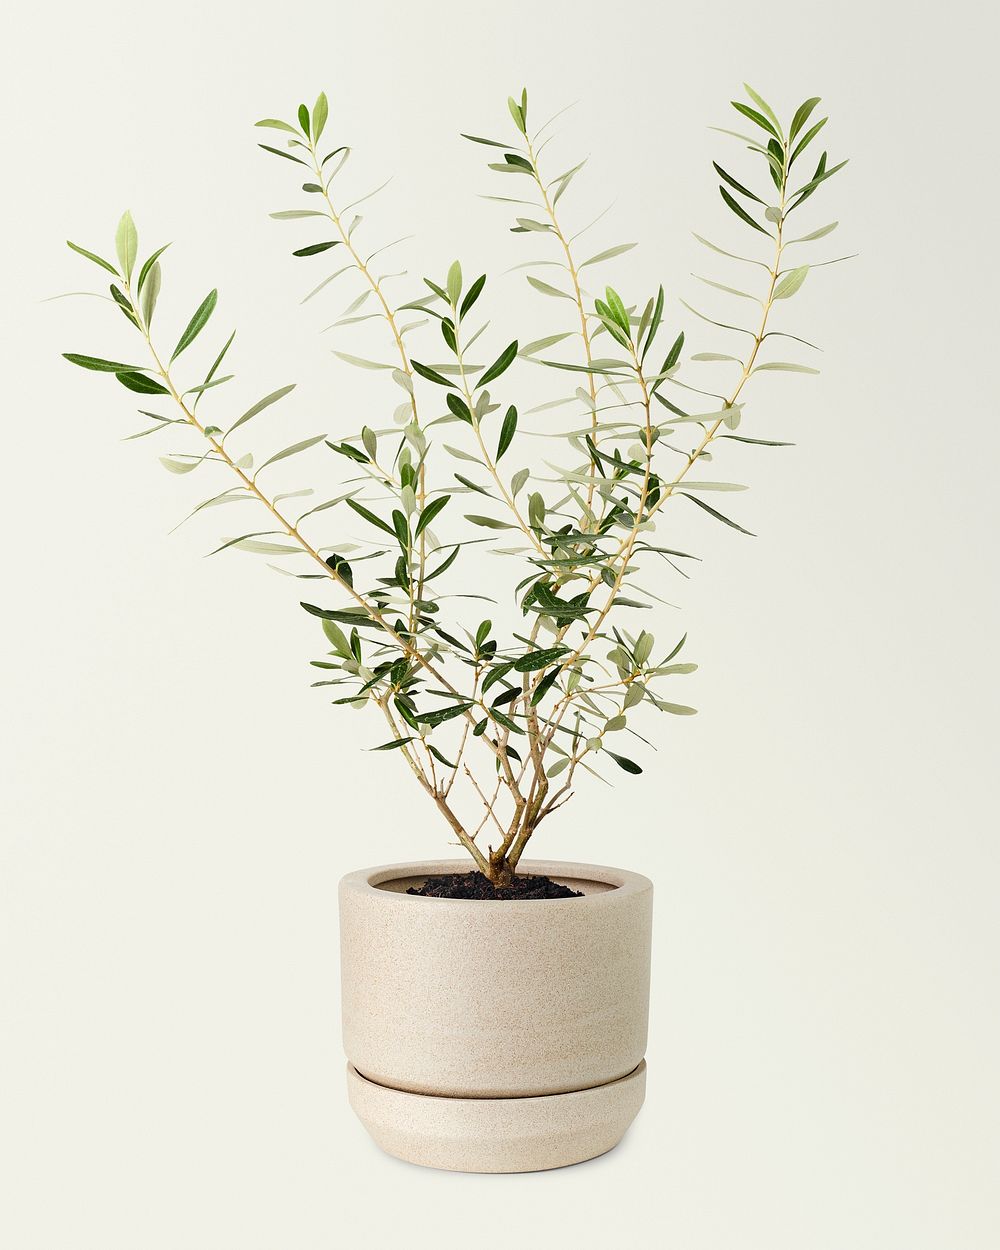 Olive plant mockup psd in a ceramic pot